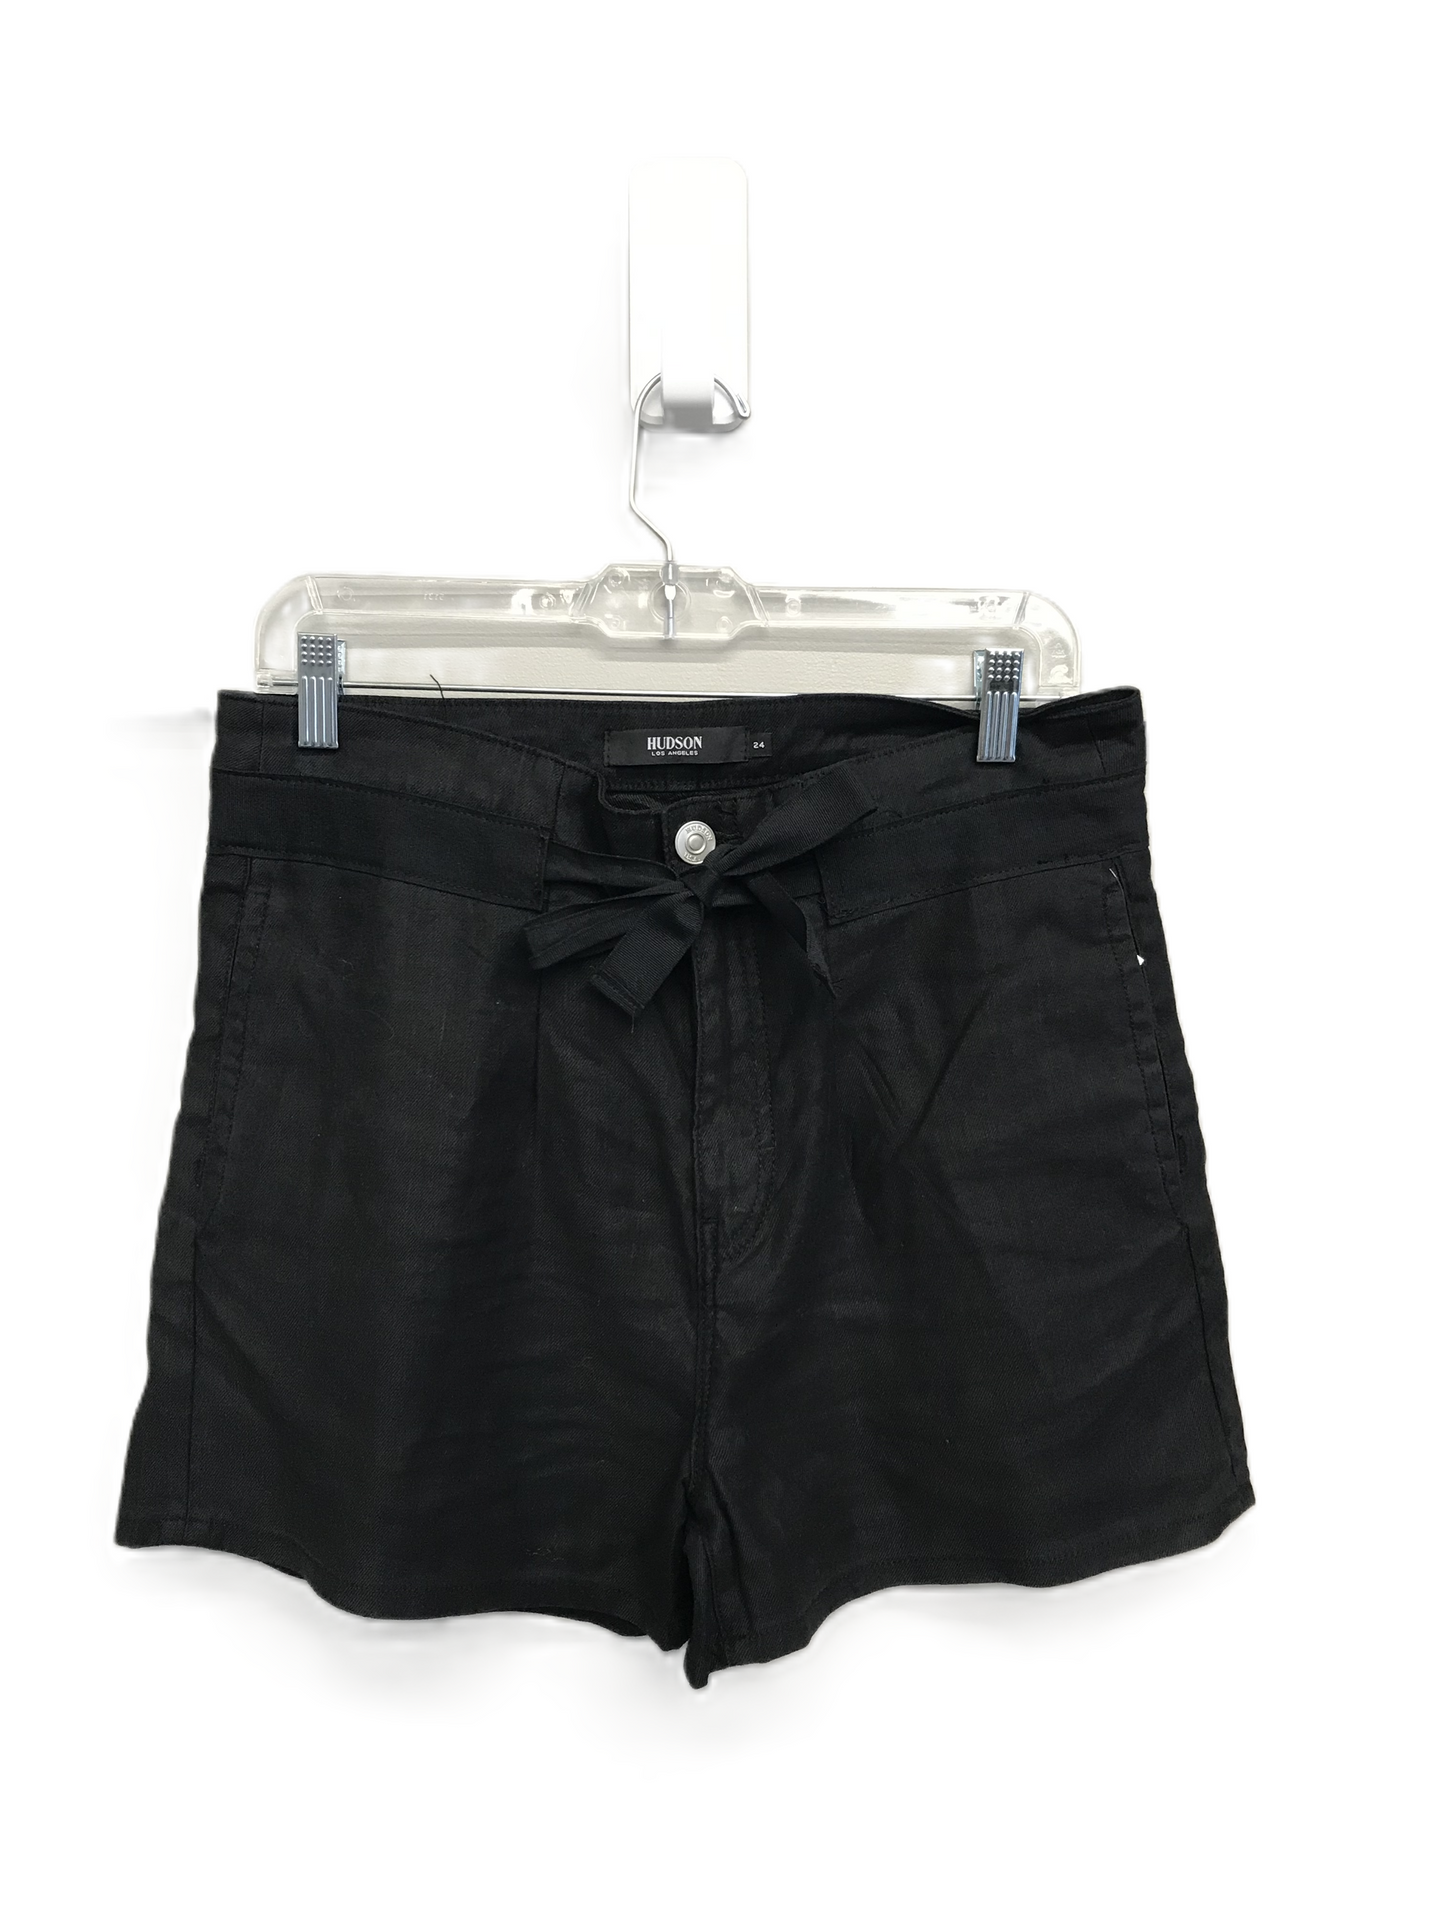 Black Shorts Designer By Hudson, Size: 0